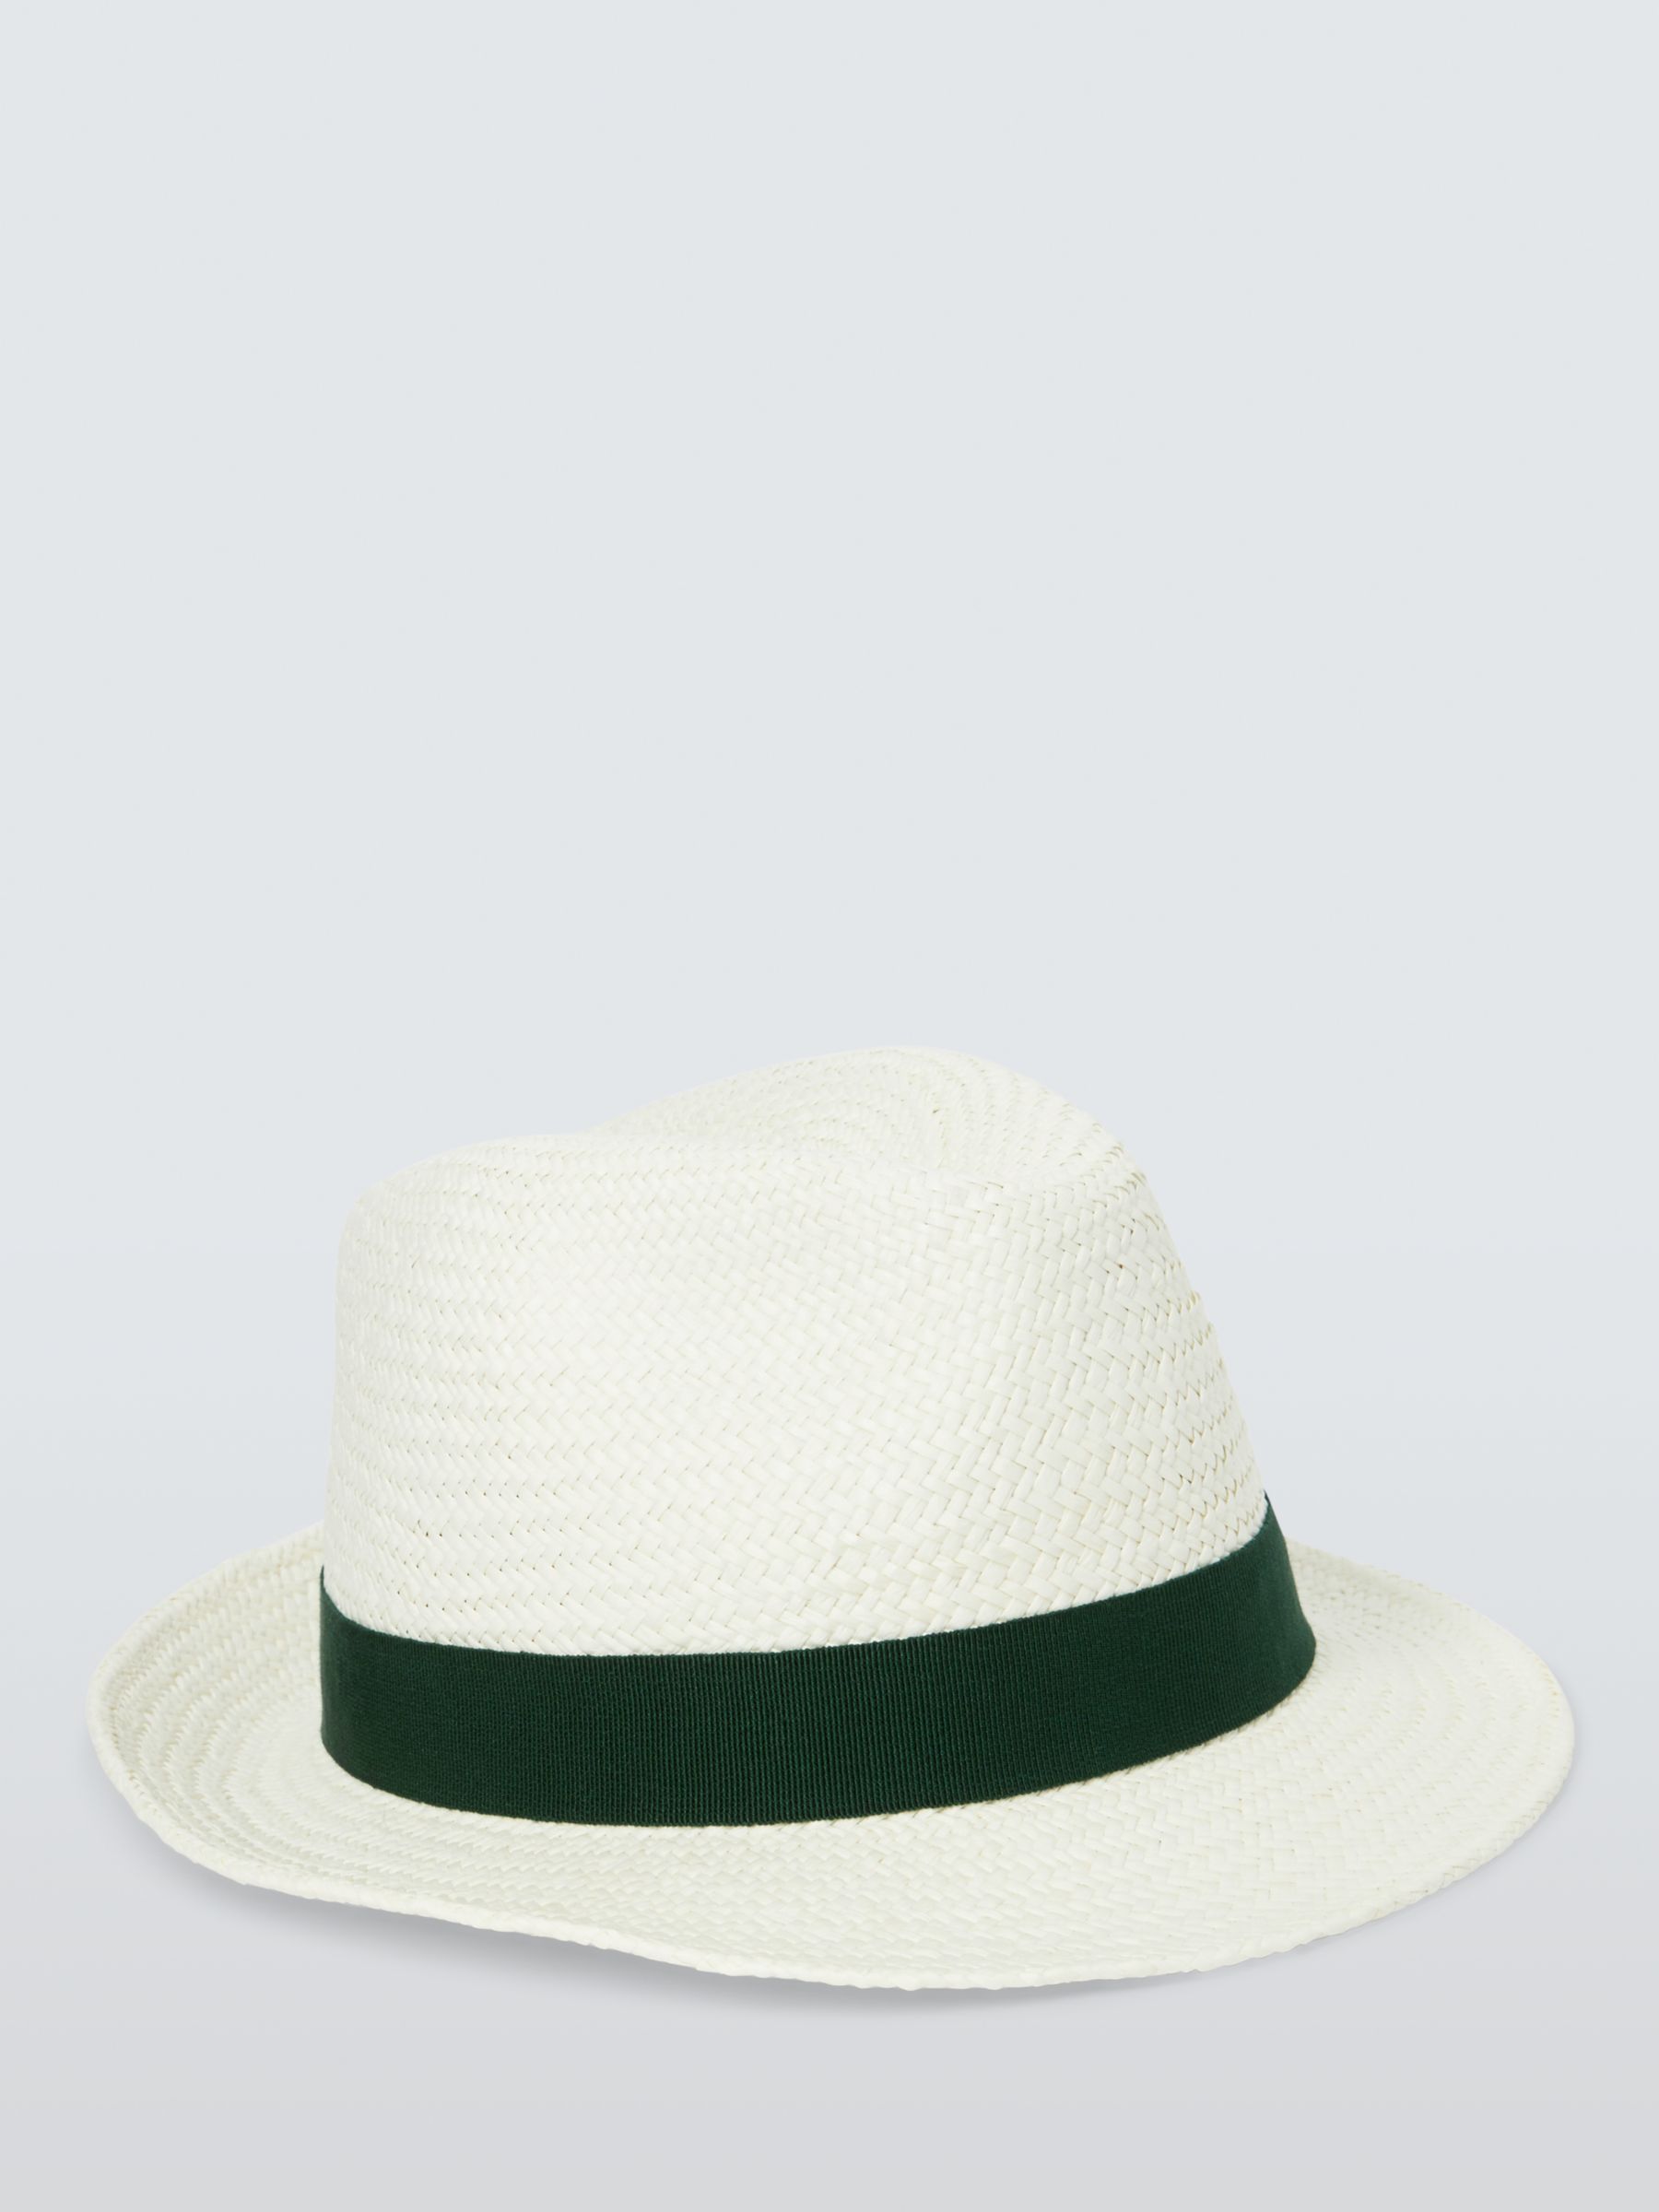 John Lewis Panama Hat, White/Green